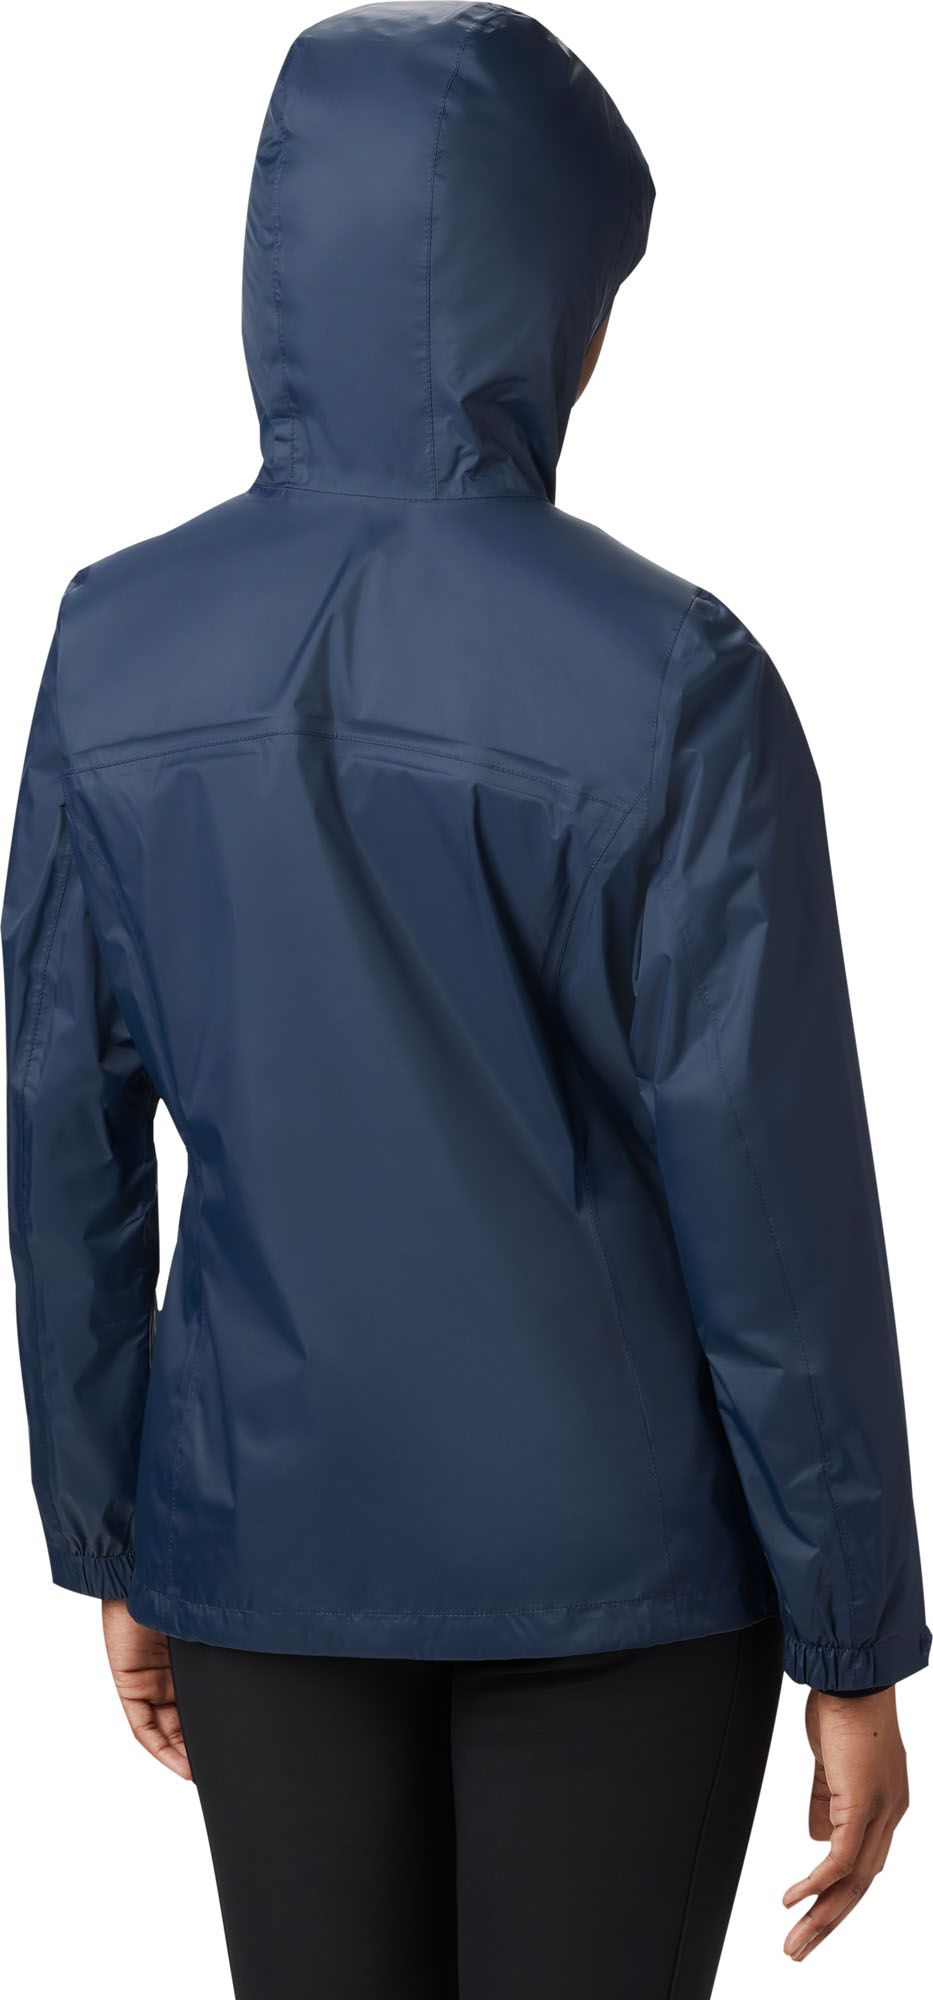 columbia lightweight rain jacket